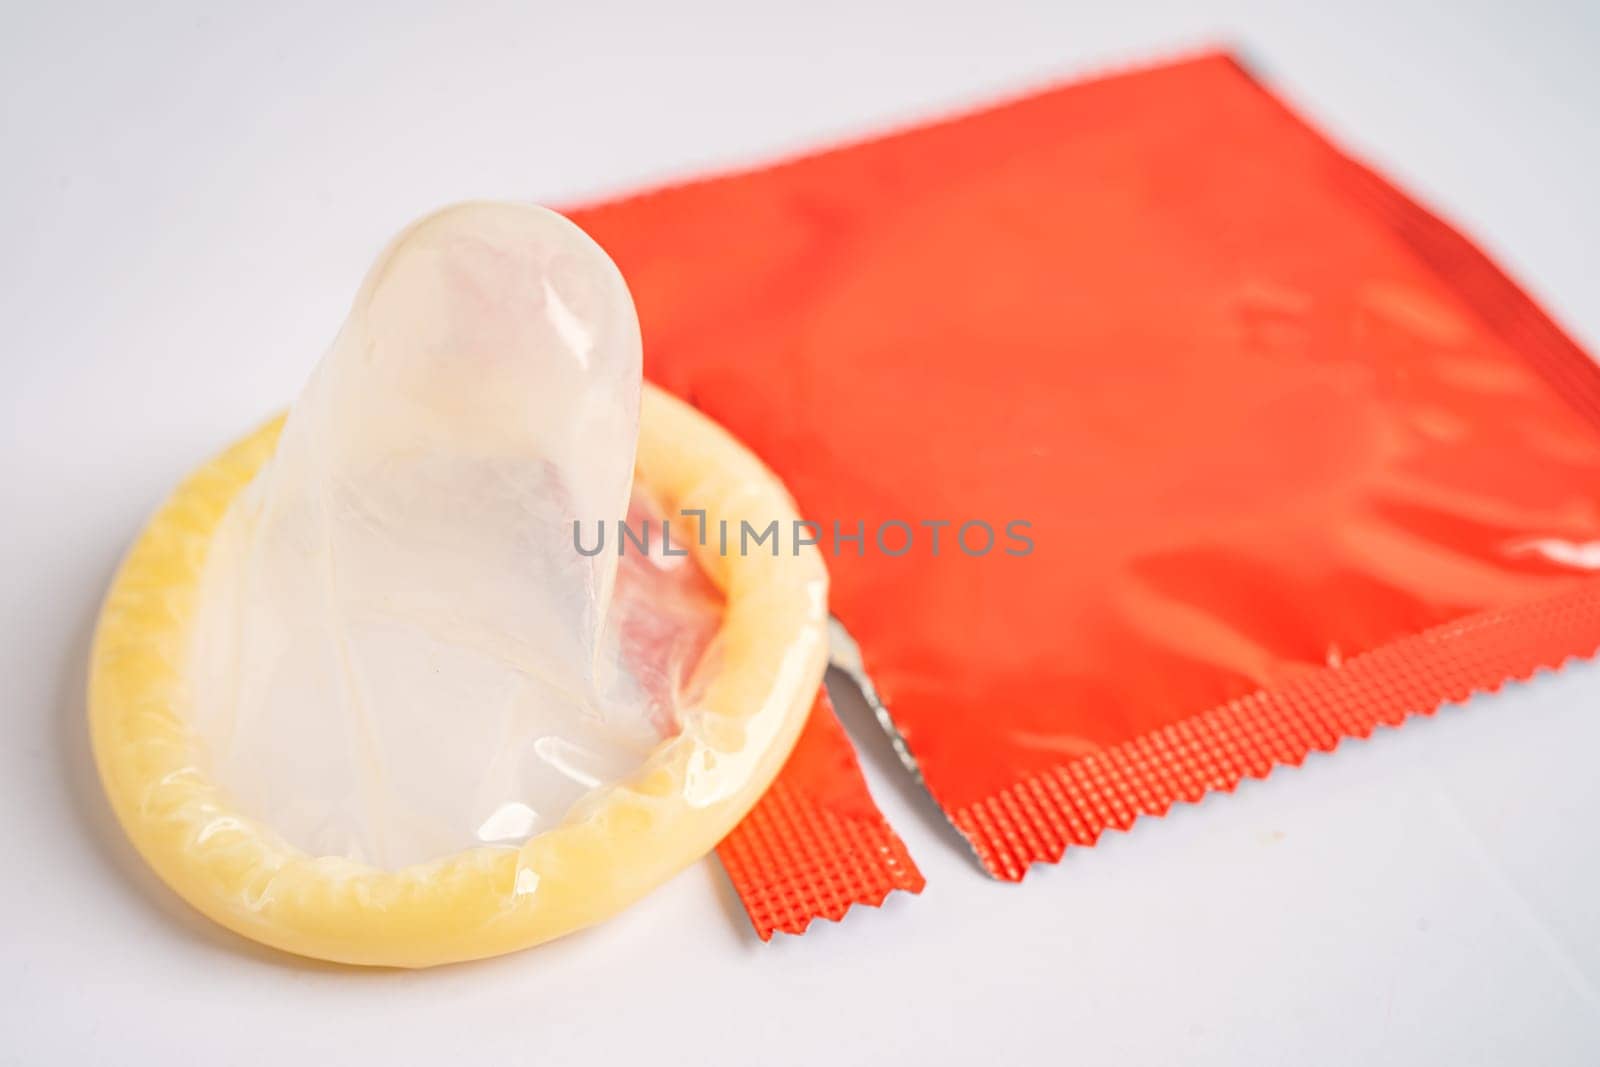 Birth control condom, contraception health and medicine.